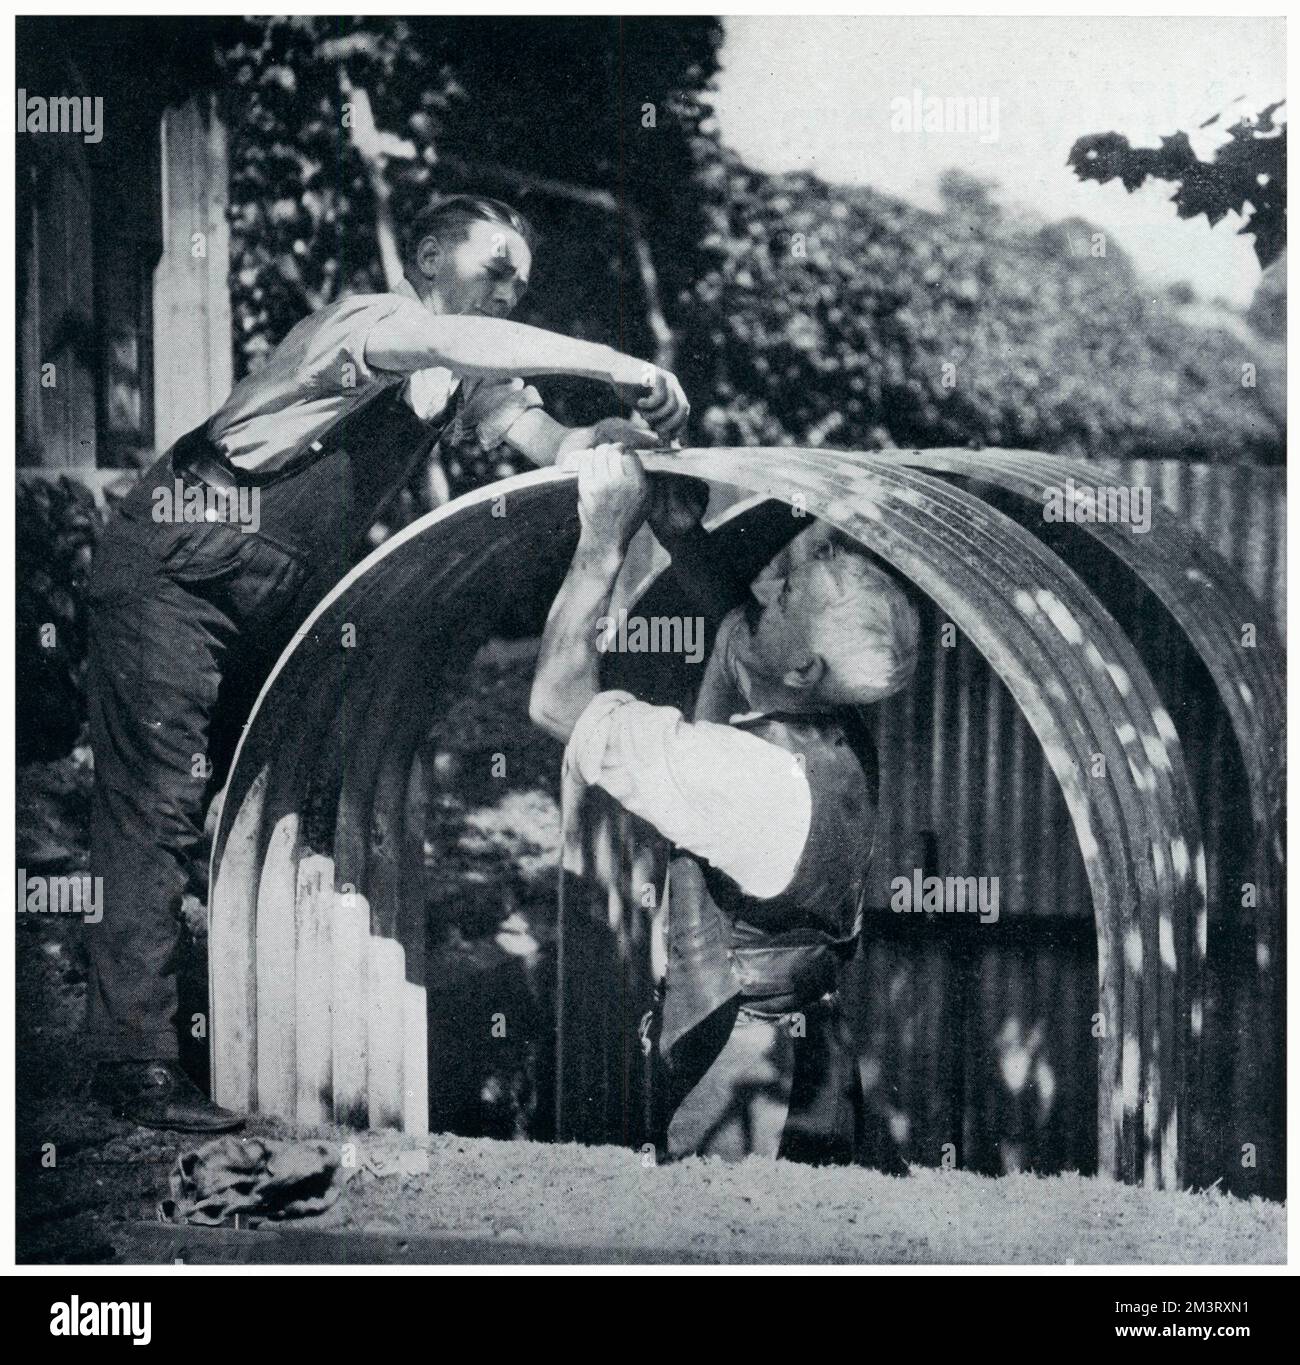 Deux hommes construisent un abri Anderson à l'extérieur d'une maison de gardien de pavillon à St. James, Londres, juste après le déclenchement de la guerre. Date: 1939 Banque D'Images